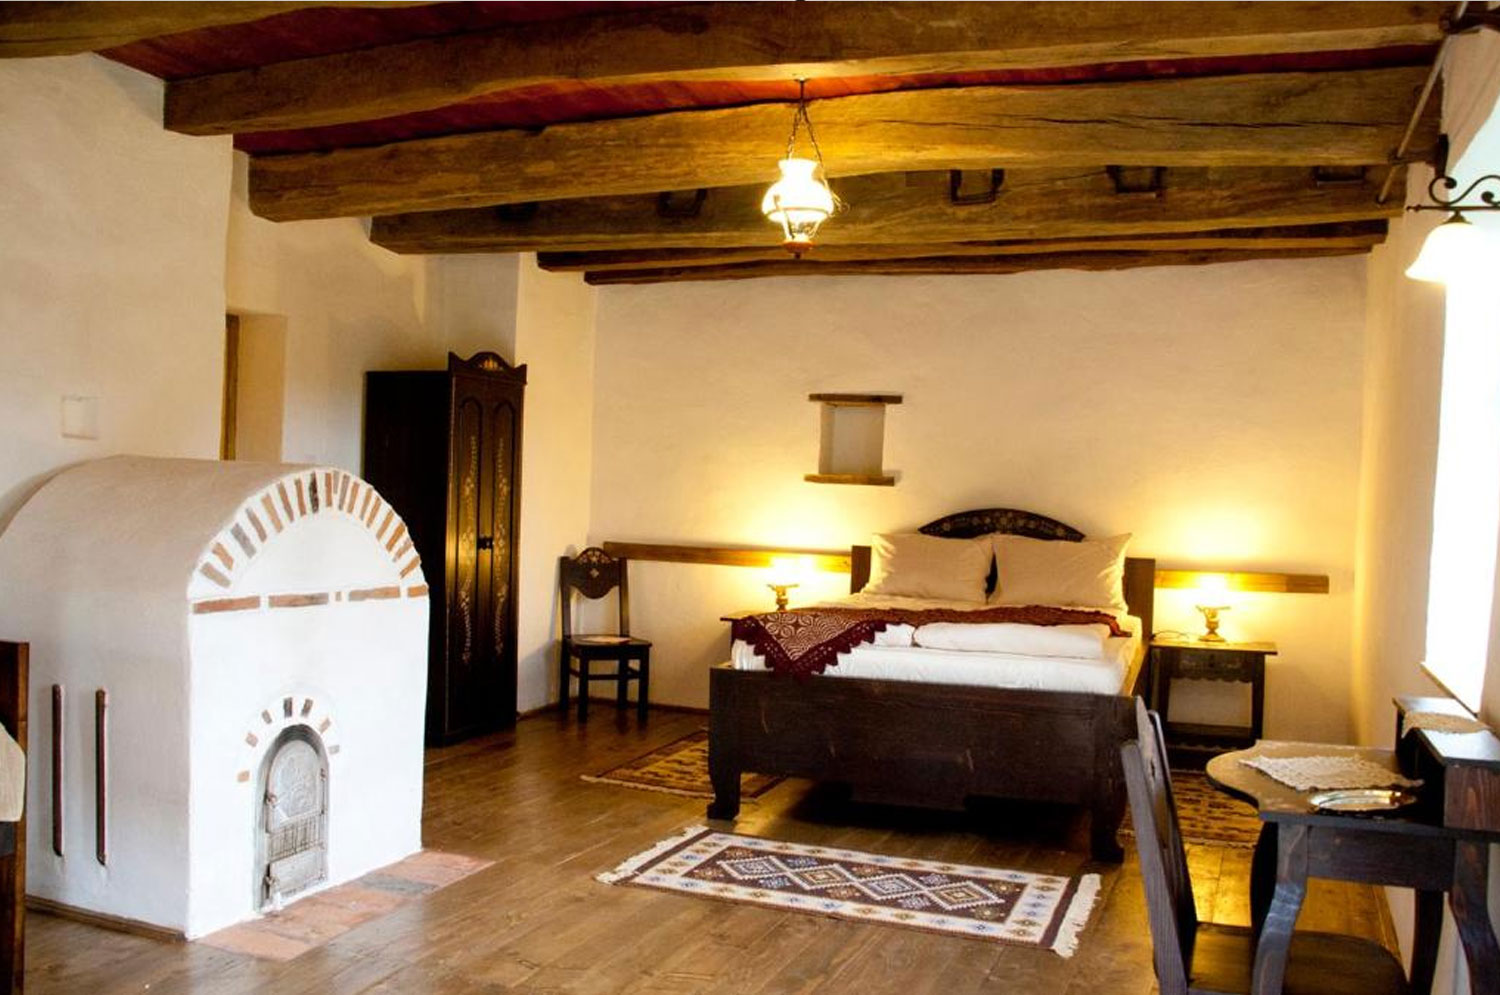 Hotel Casa cu Zorele - Distinctive, special, fancy hotels in Romania